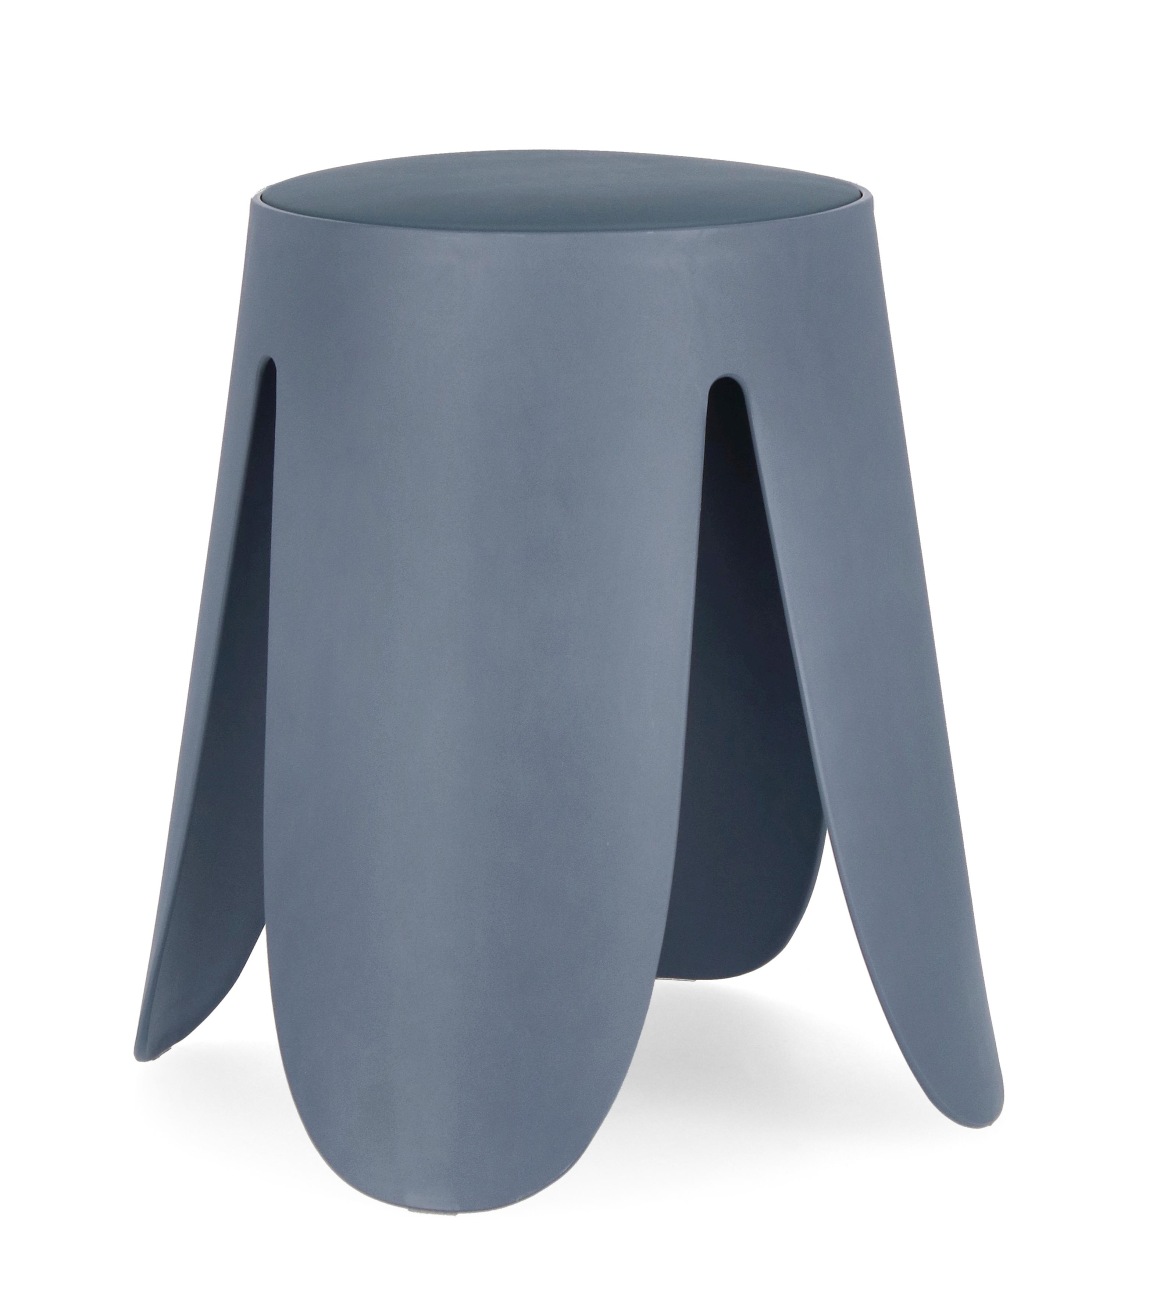 Der Hocker Imogen überzeugt mit seinem modernen Stil. Gefertigt wurde er aus Kunststoff, welcher einen blauen Farbton besitzt. Die Sitzfläche ist aus Kunstleder und hat eine blaue Farbe. Der Hocker besitzt einen Durchmesser von 37 cm.